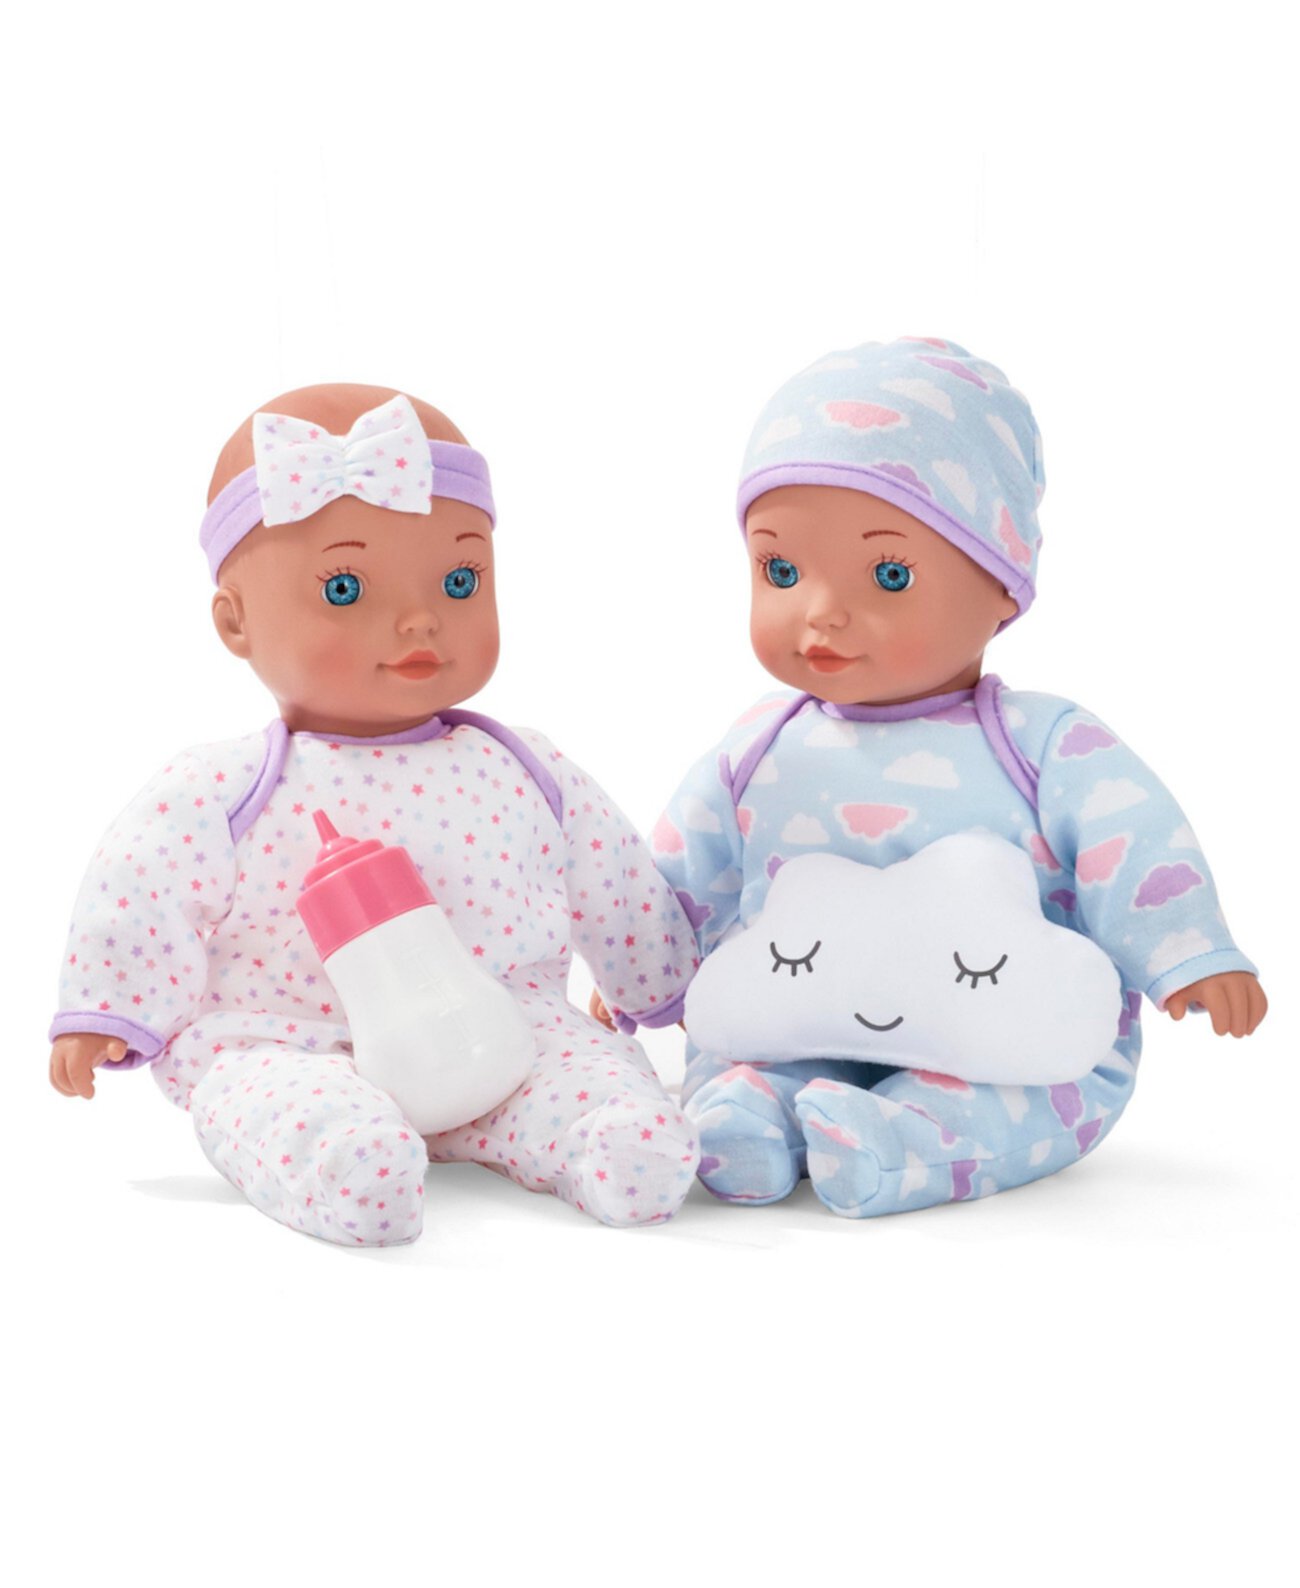 Набор кукол Cuddle Twins 12 дюймов, созданный для вас компанией Toys R Us You & Me